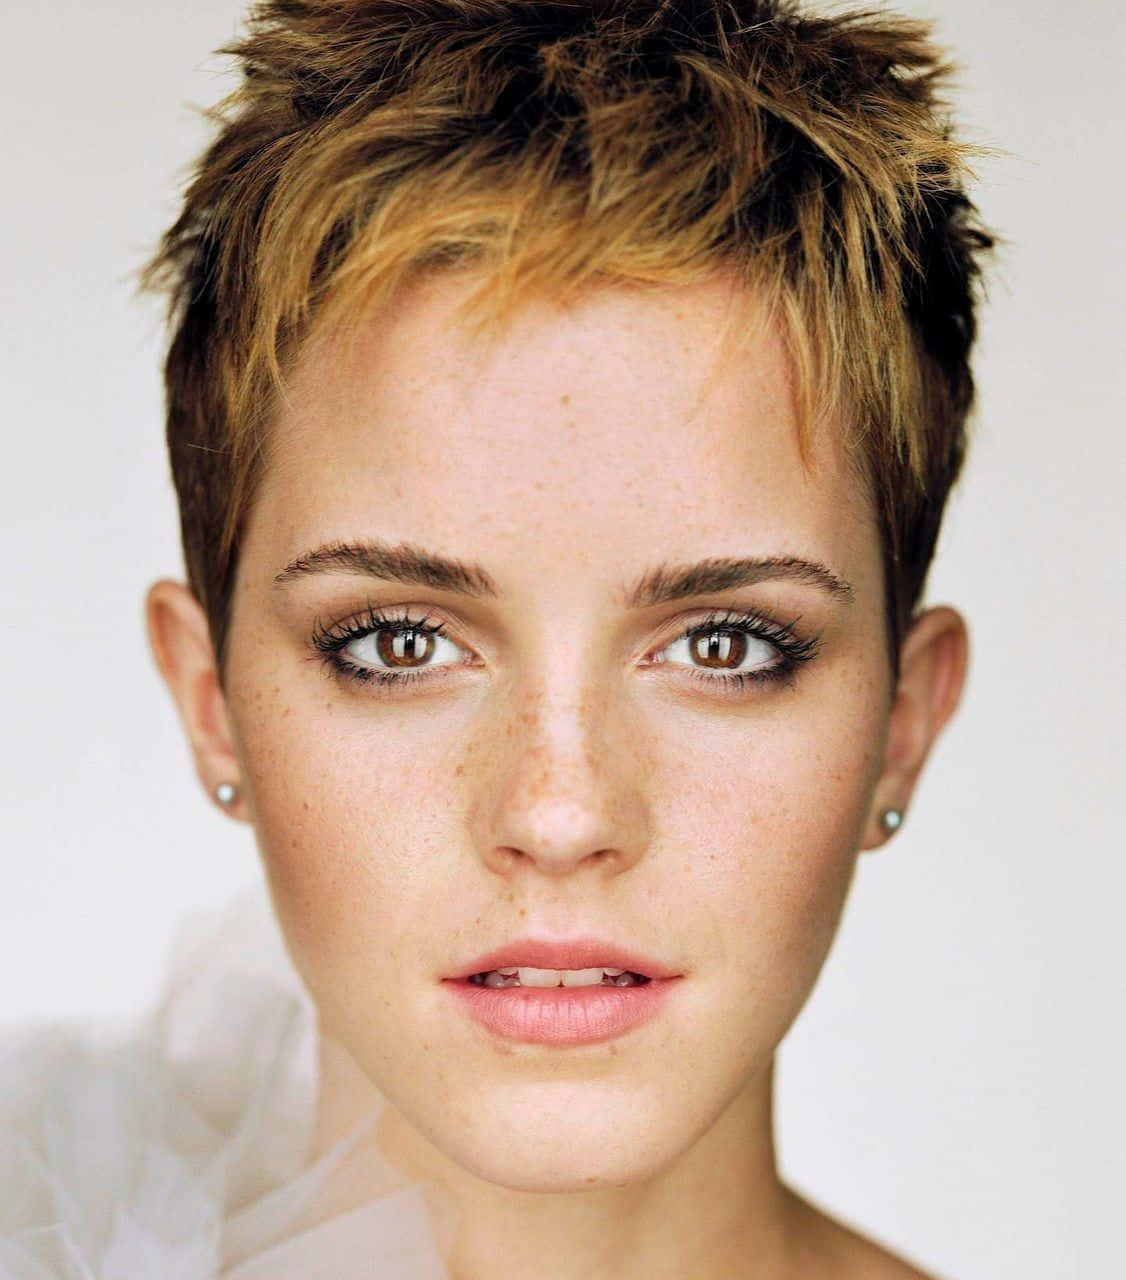 Imagemde Retrato Da Emma Watson.